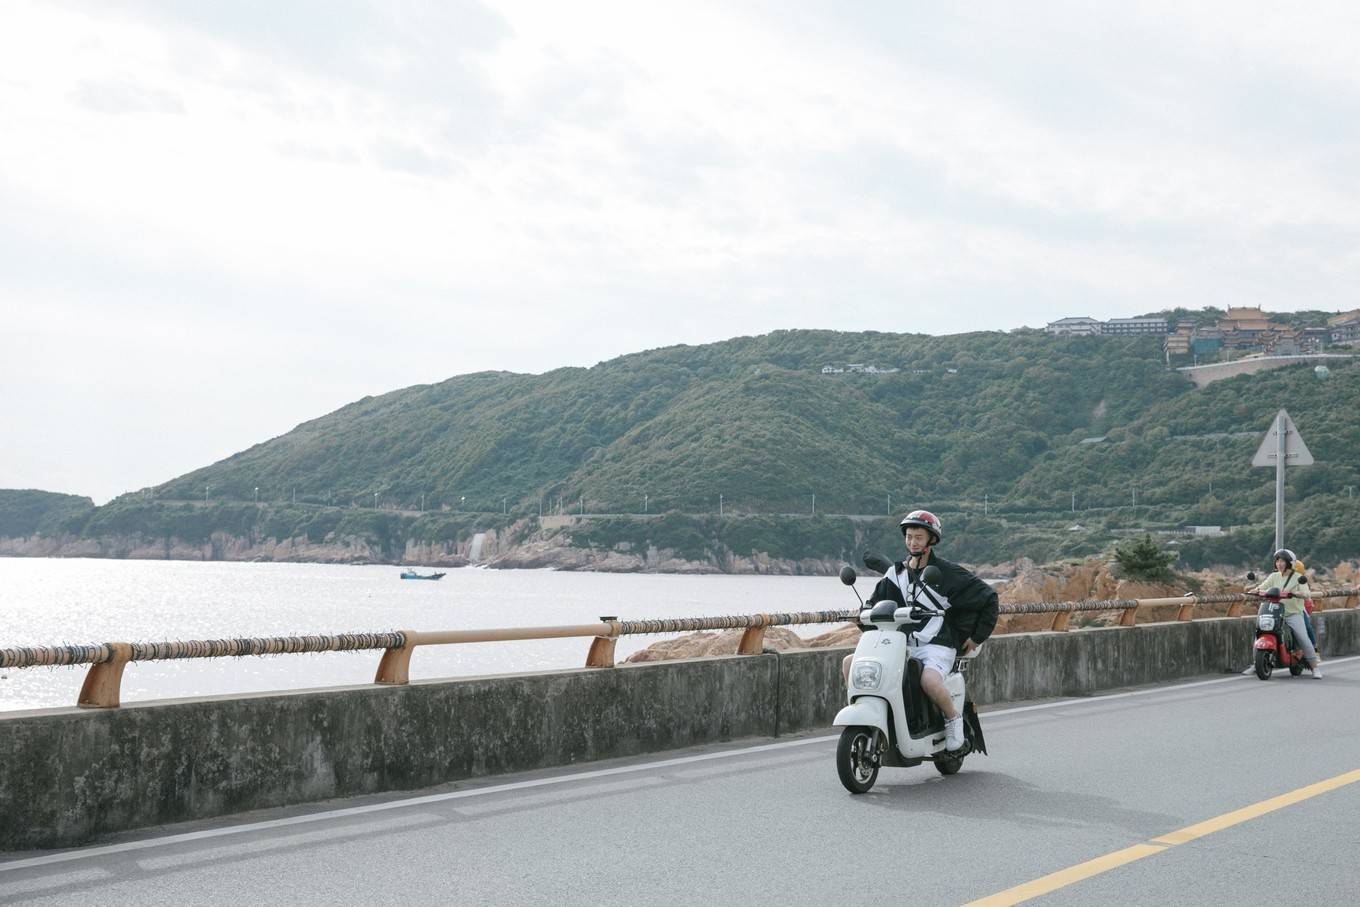 海岛旅行，必不可少的是摩托车感受风一样的自由